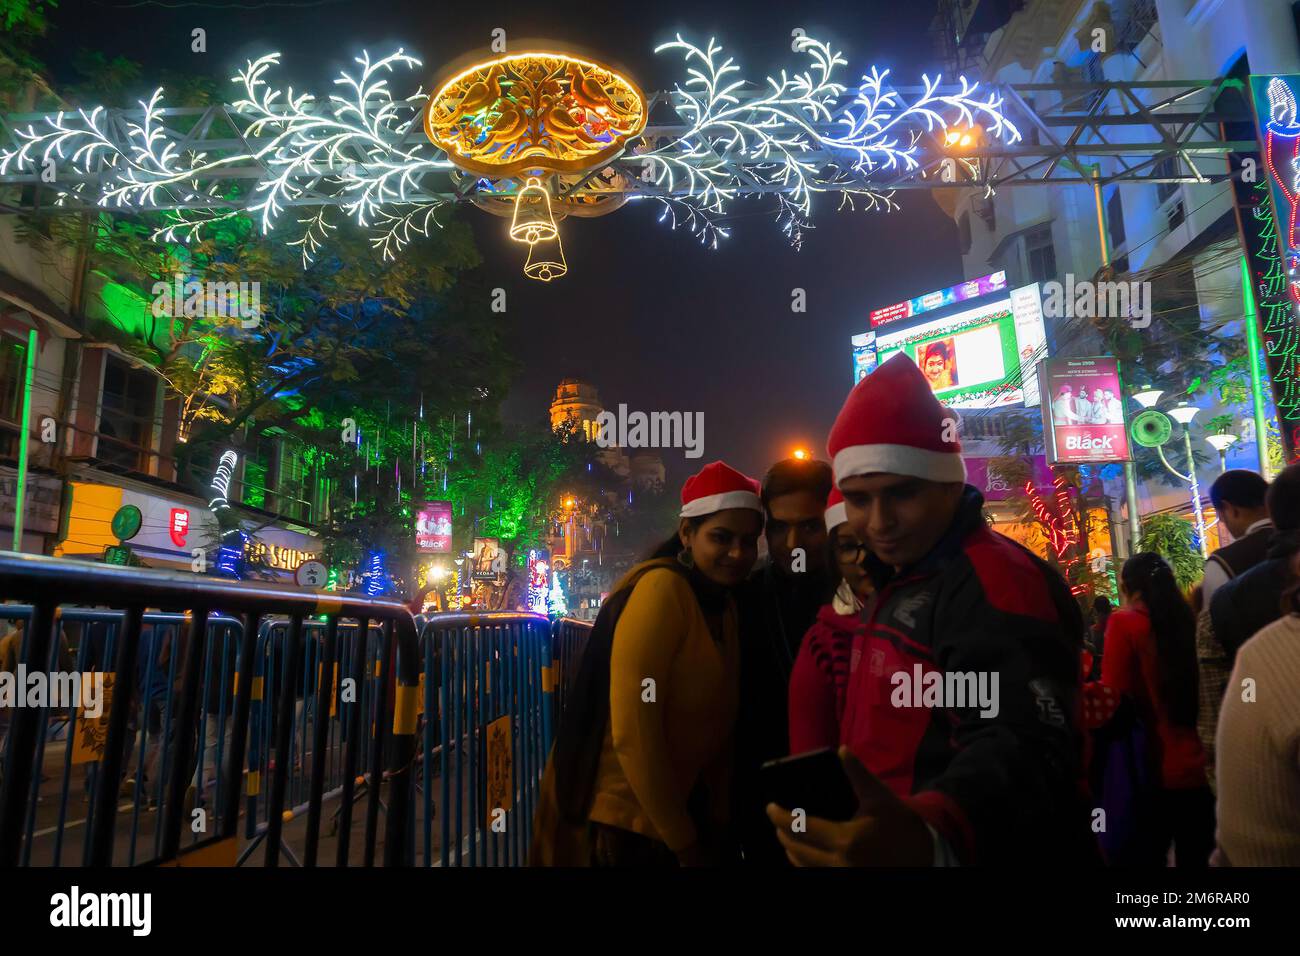 Kolkata, Bengala Occidental, India - 26.12.2018 : Los jóvenes se divierten en la calle del parque iluminado y decorado con luces y festivo fin de año Foto de stock